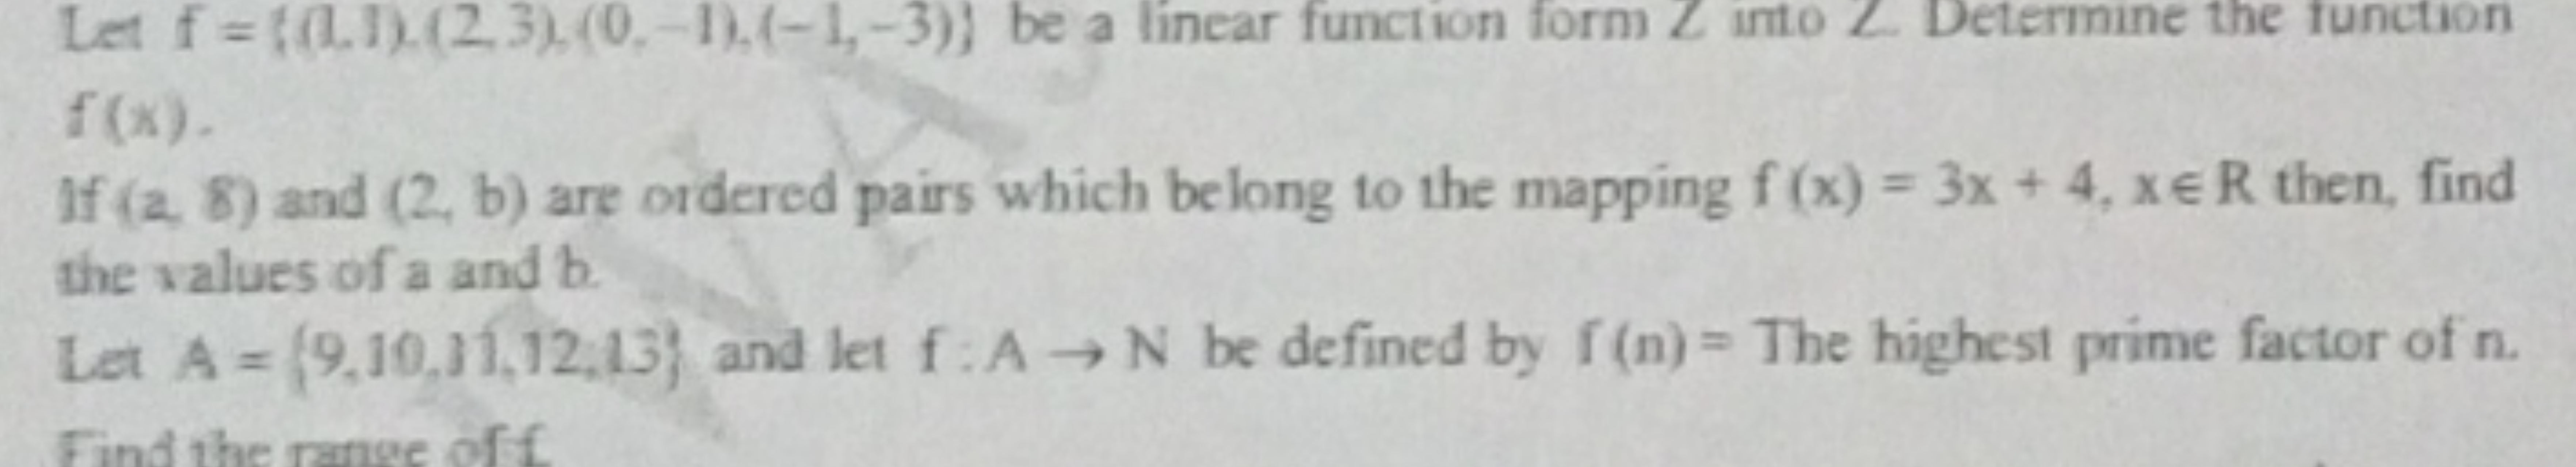 Let f={(1),(2,3),(0,−1),(−1,−3)} be a linear function form L into L De